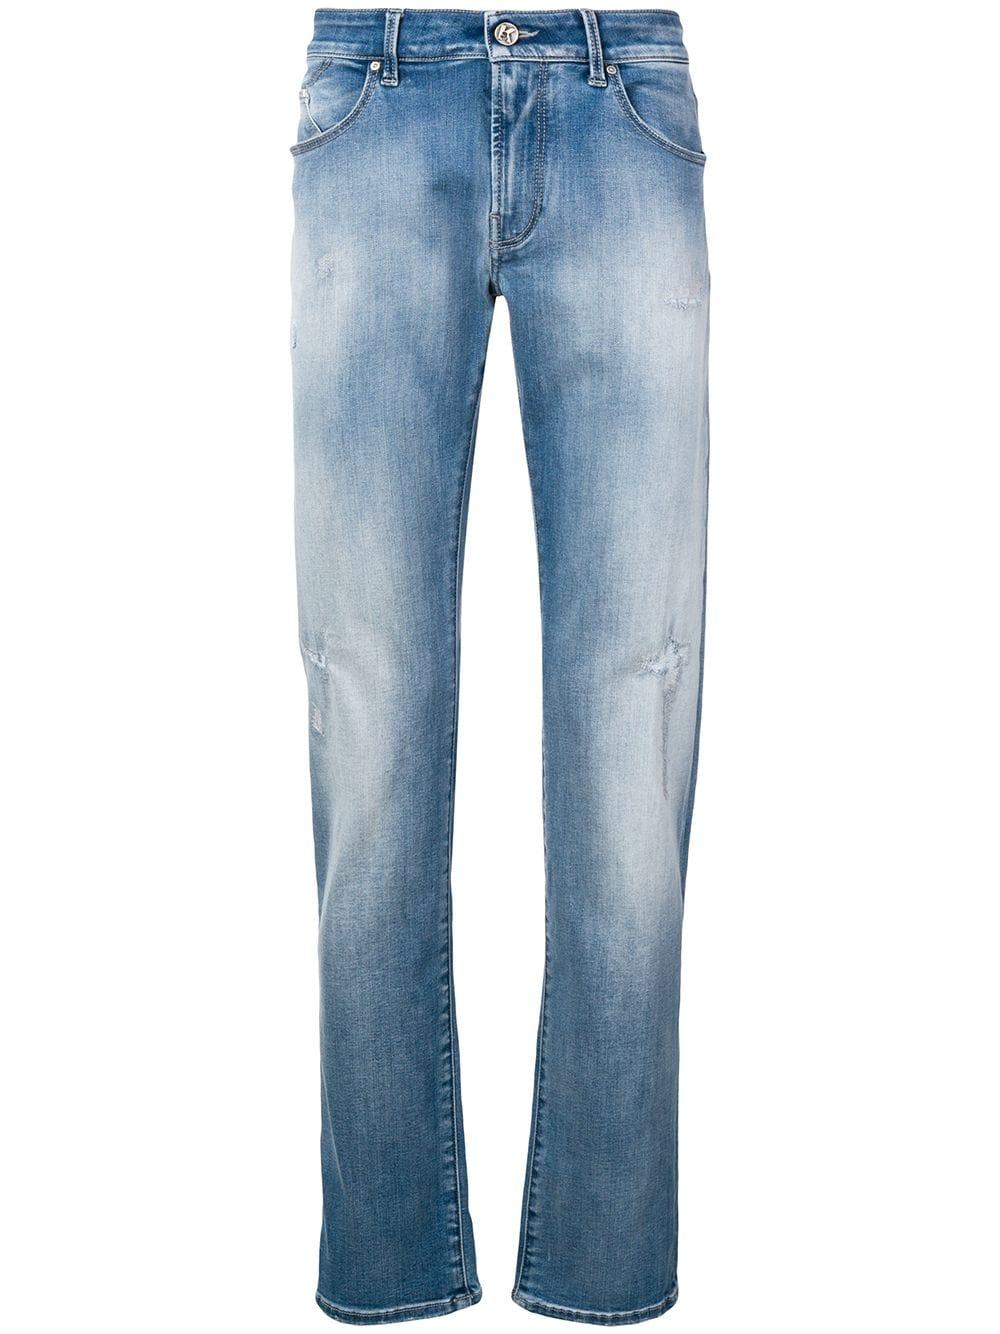 Karl Lagerfeld Denim Ripped Slim Jeans in Blue for Men - Lyst